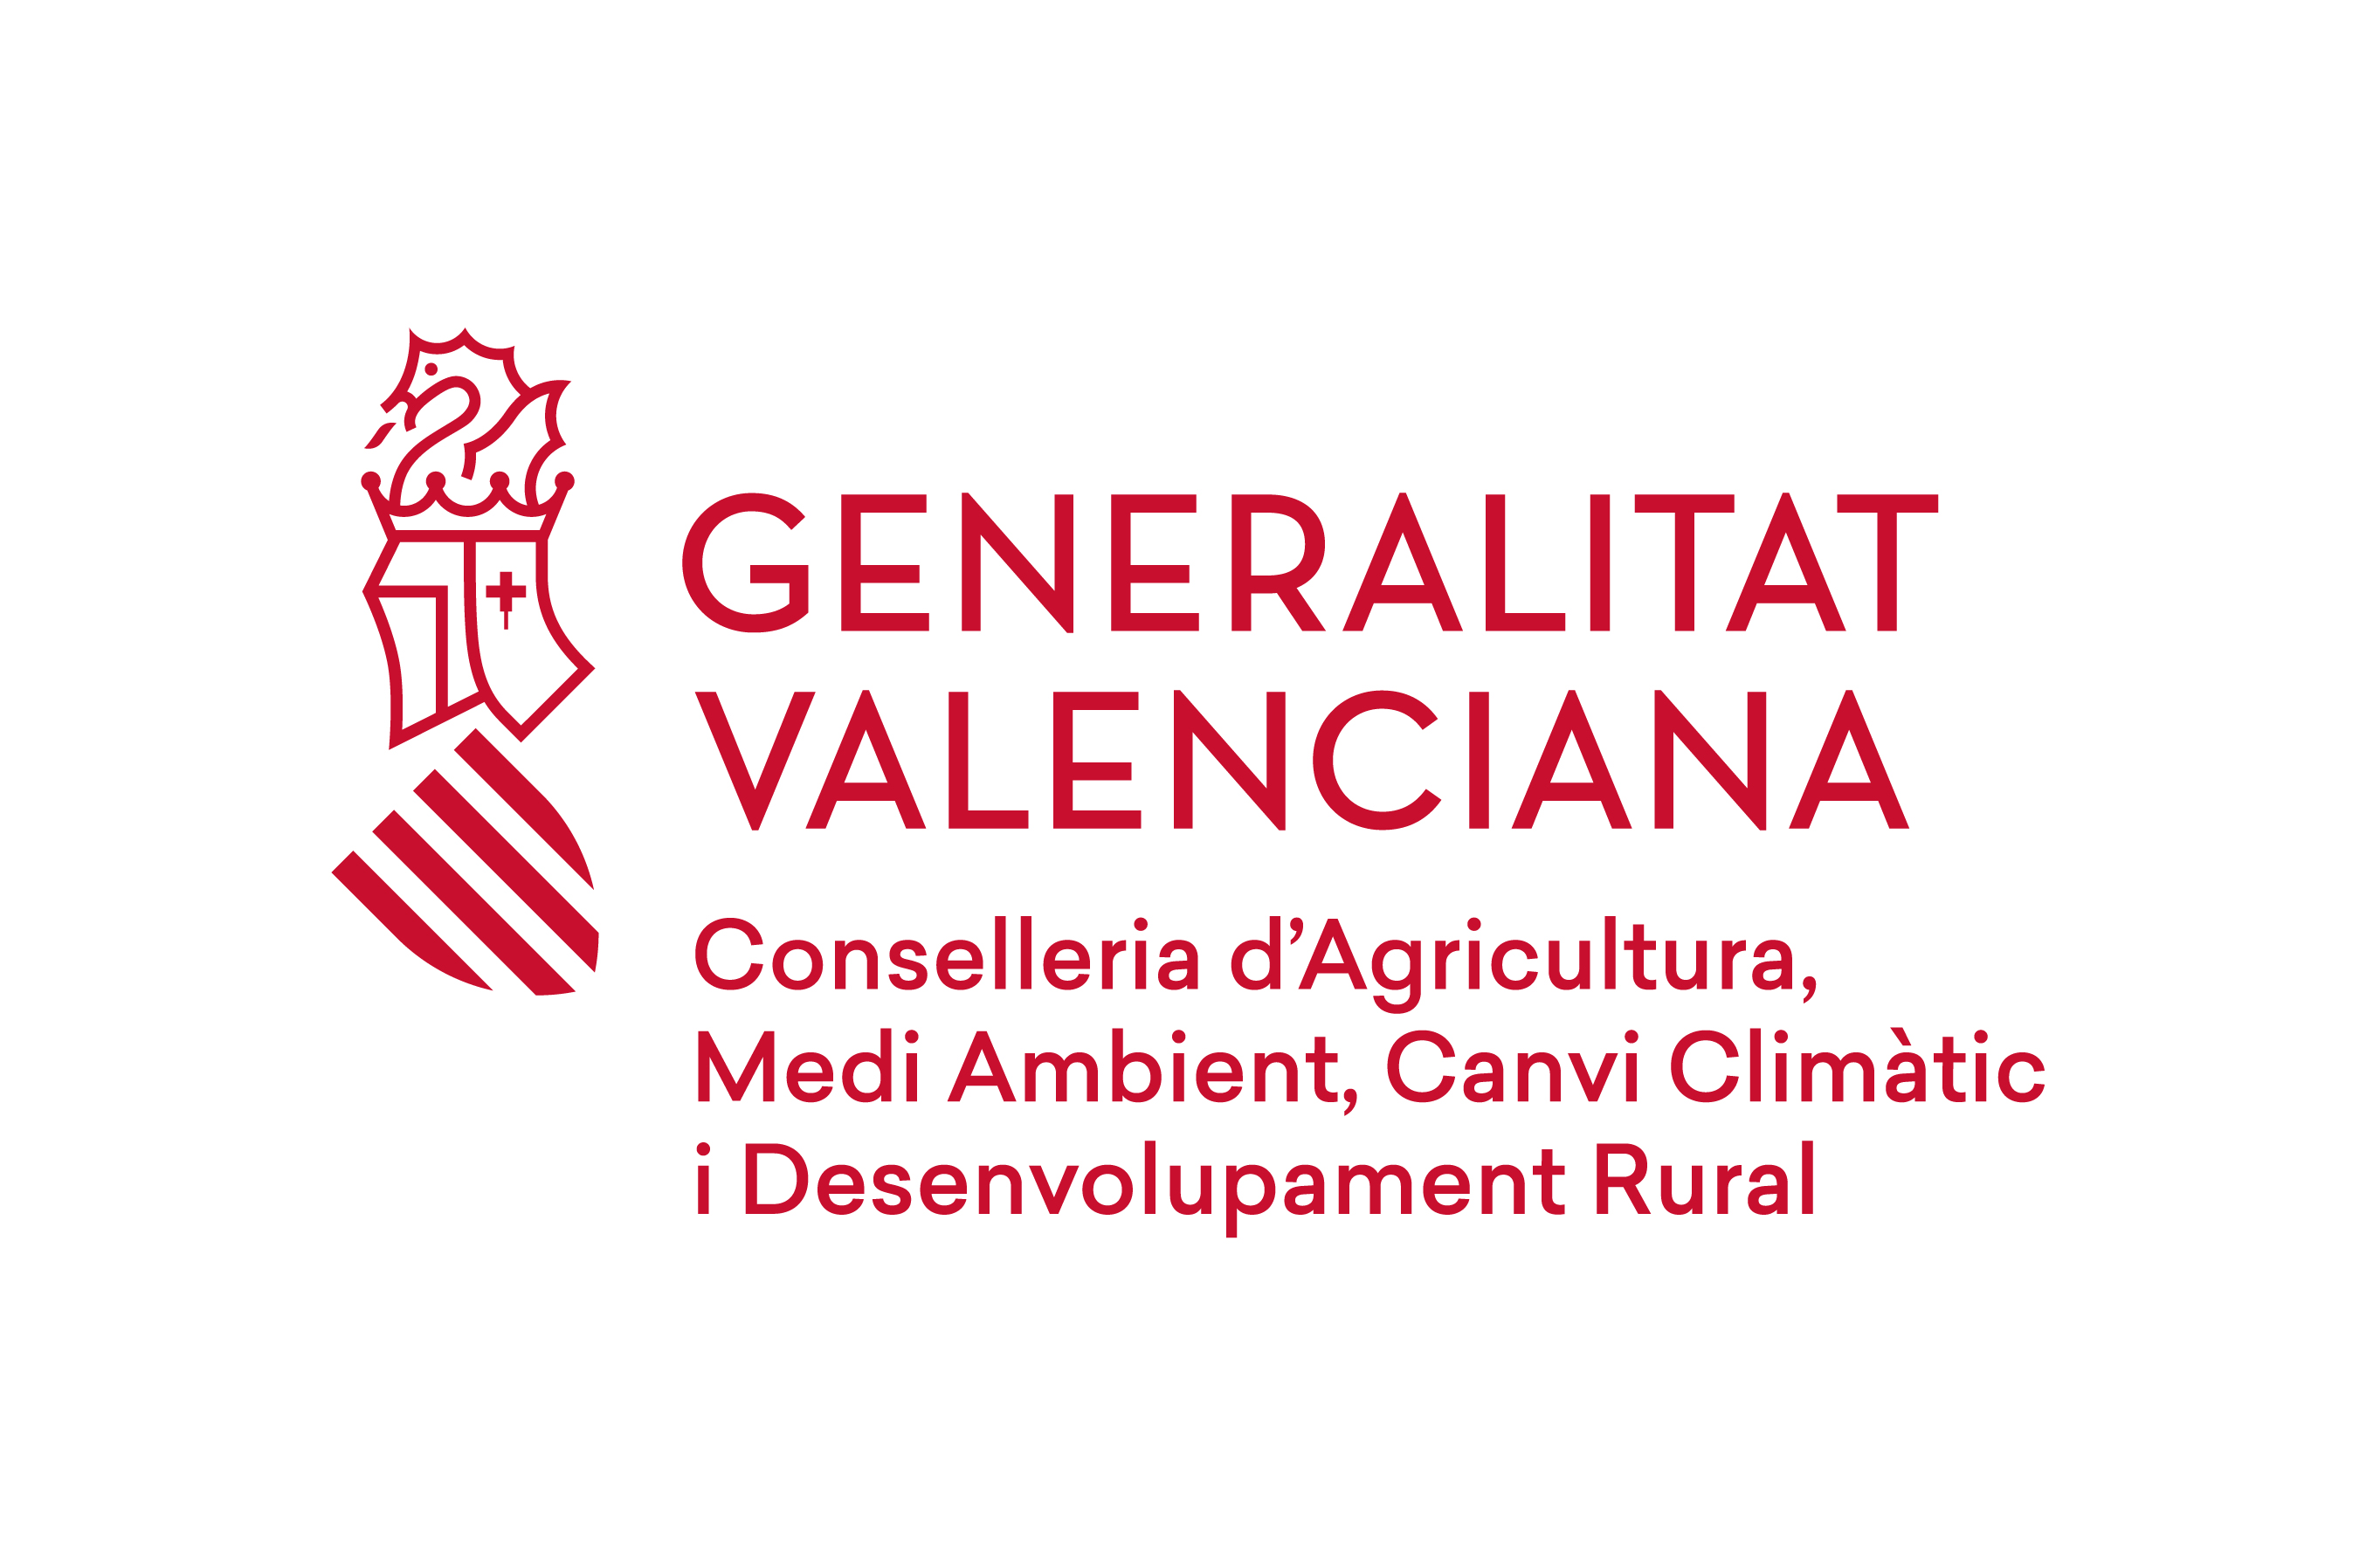 CONSELLERIA DE AGRICULTURA, MEDIO AMBIENTE, CAMBIO CLIMÁTICO Y DESARROLLO RURAL.